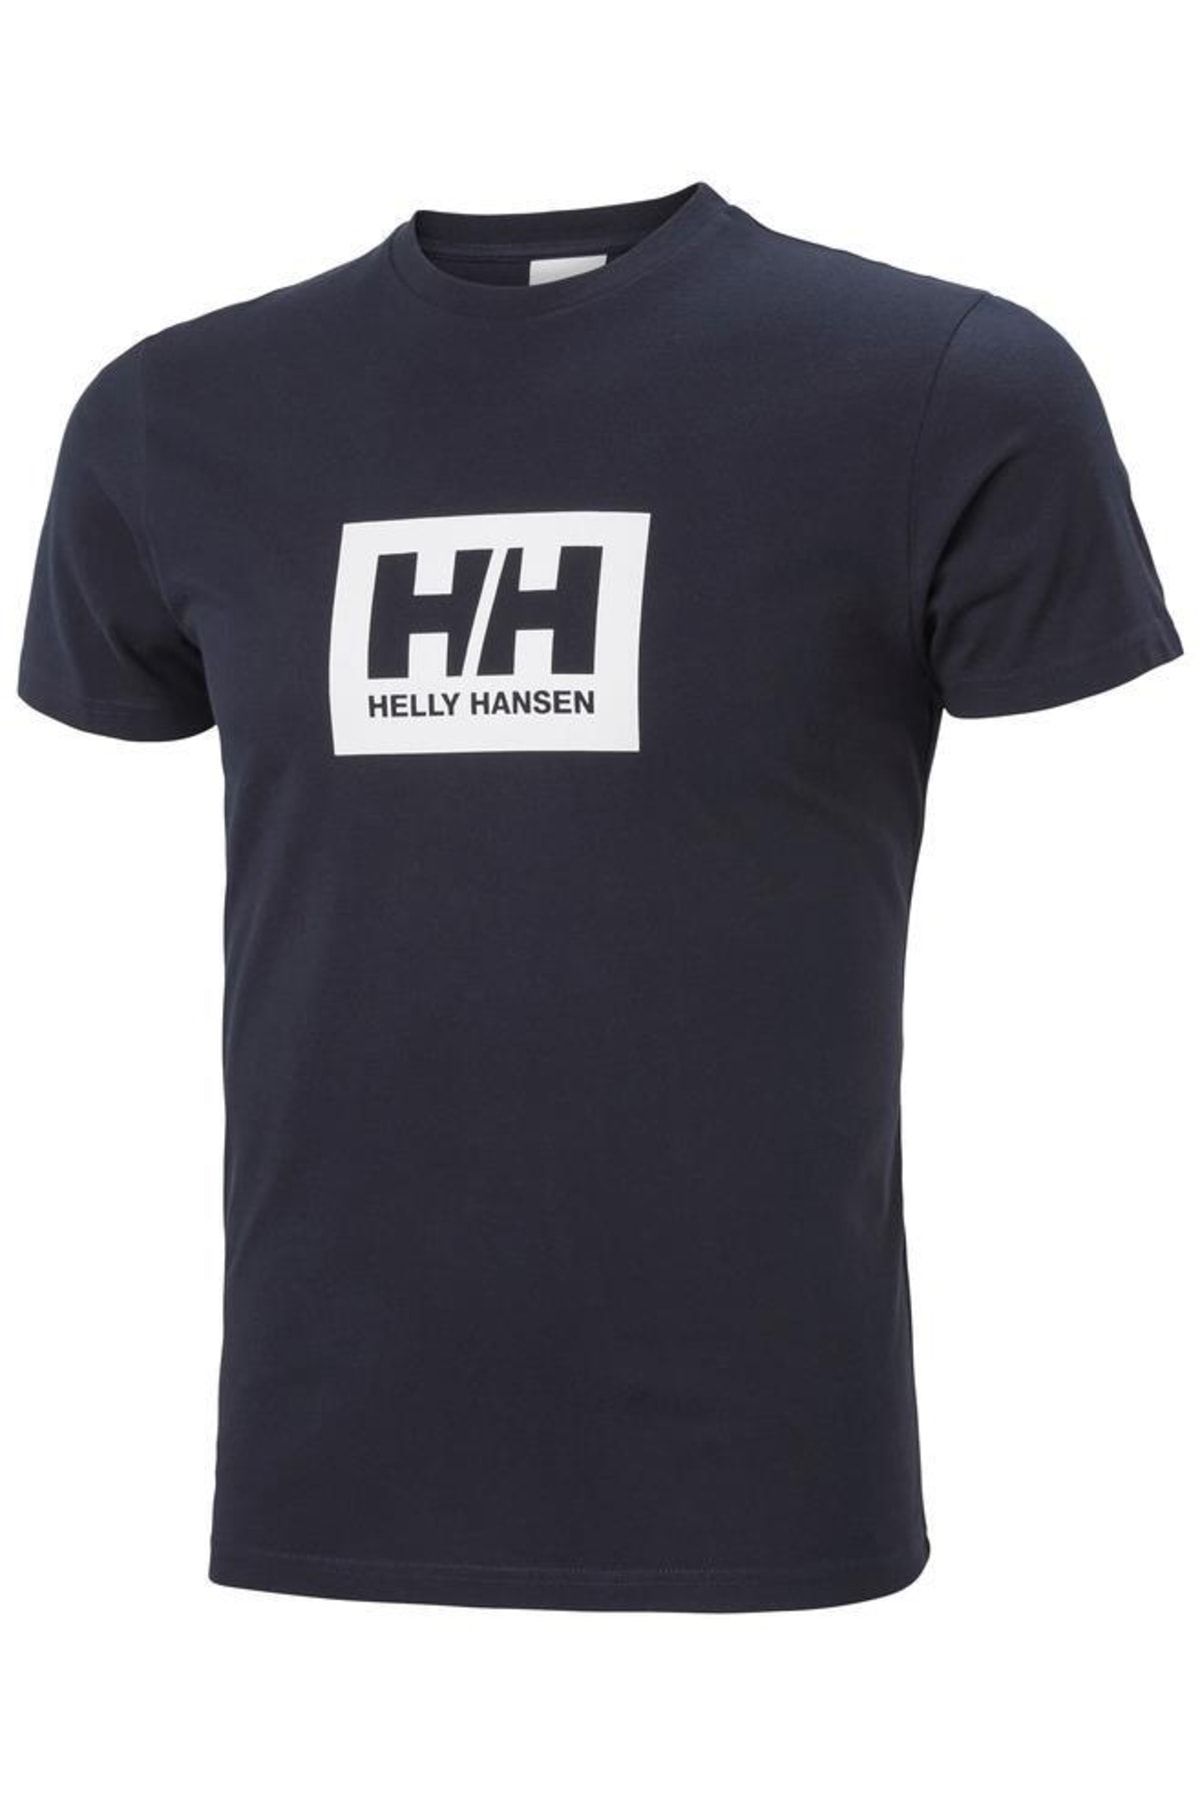 Helly Hansen Hha.53285 - Hh Box T Erkek T-shirt